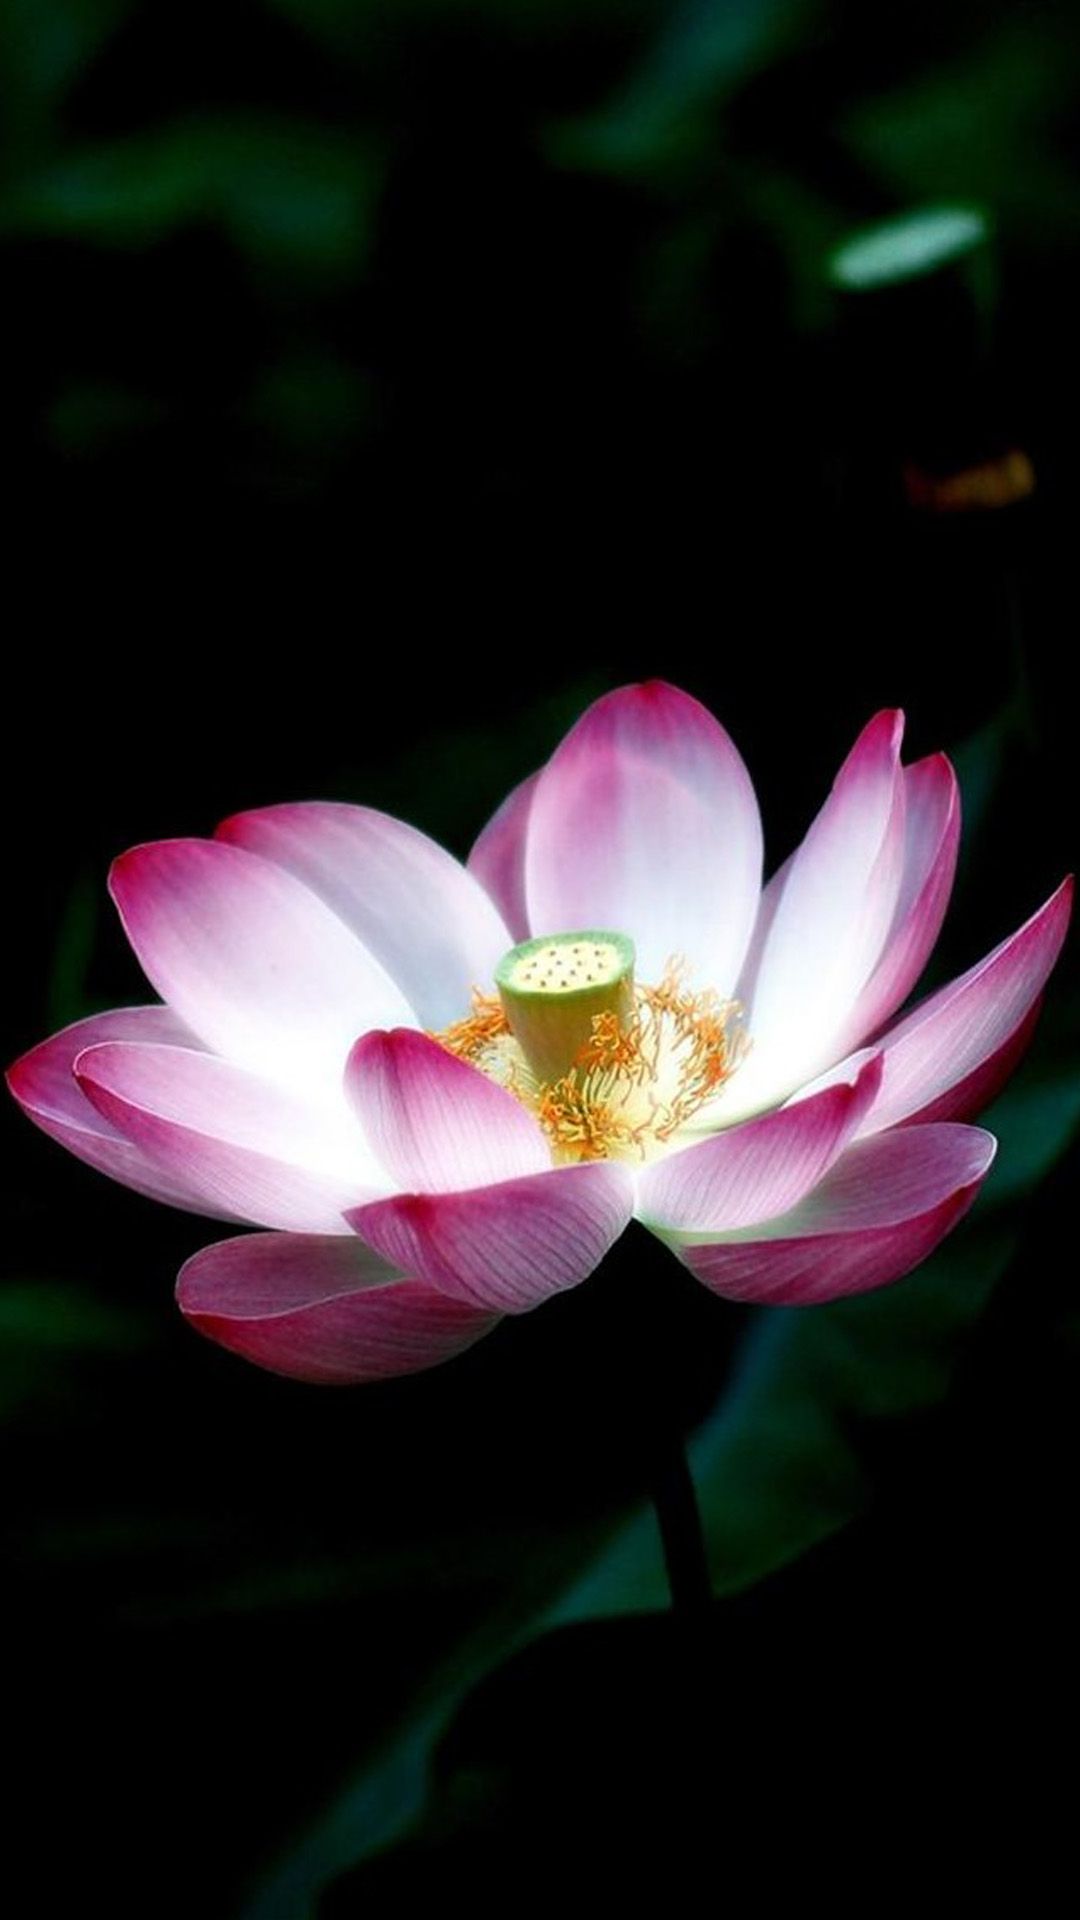 flor de loto fondo de pantalla para iphone,flor,loto sagrado,pétalo,planta floreciendo,loto